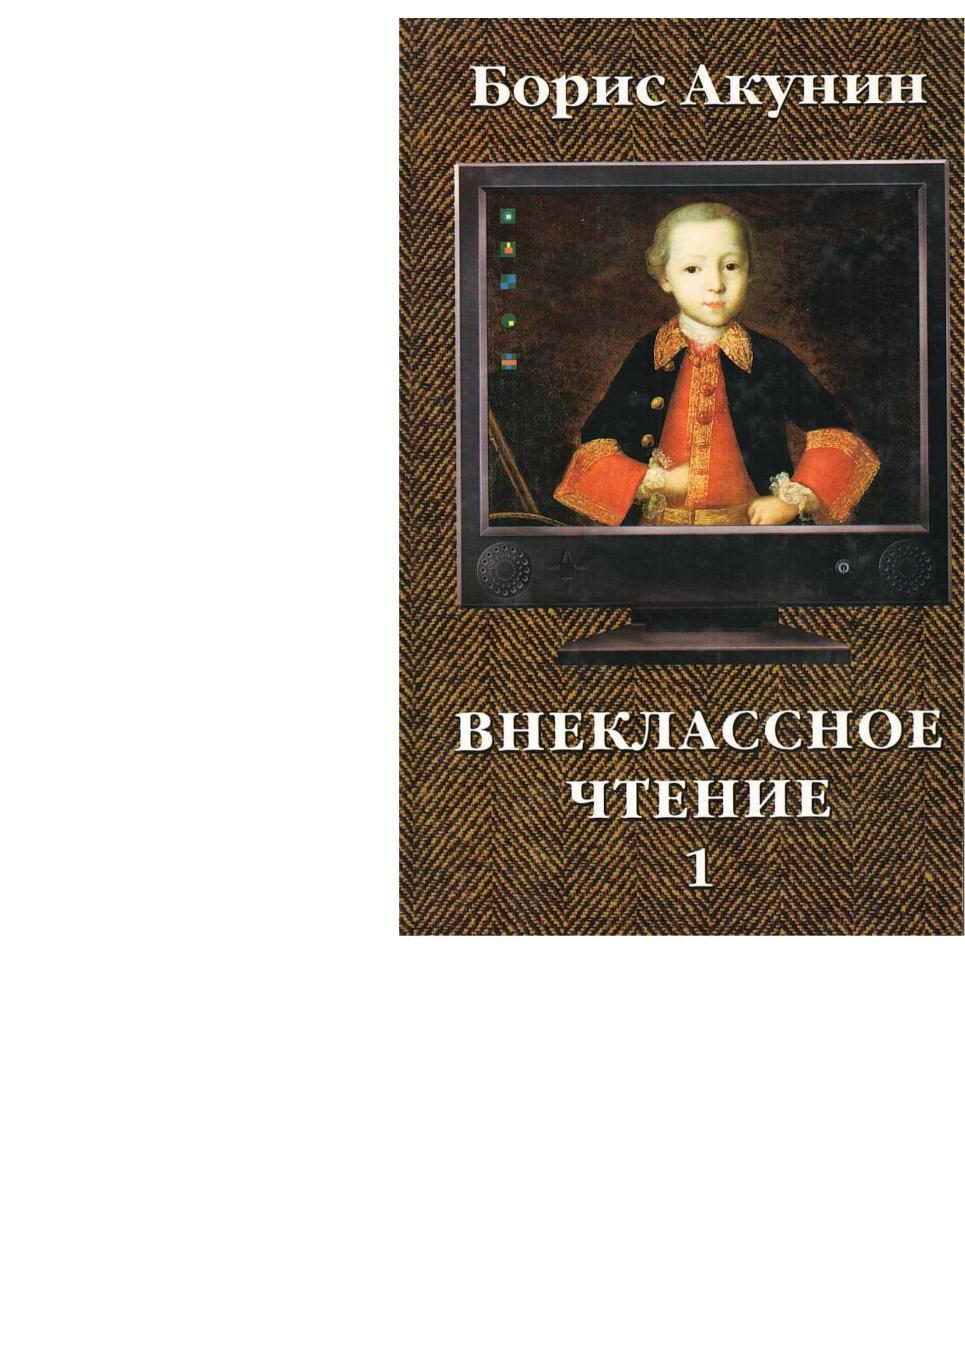 Акунин Б. Внеклассное чтение. Роман. Т. 1. – М., 2002.